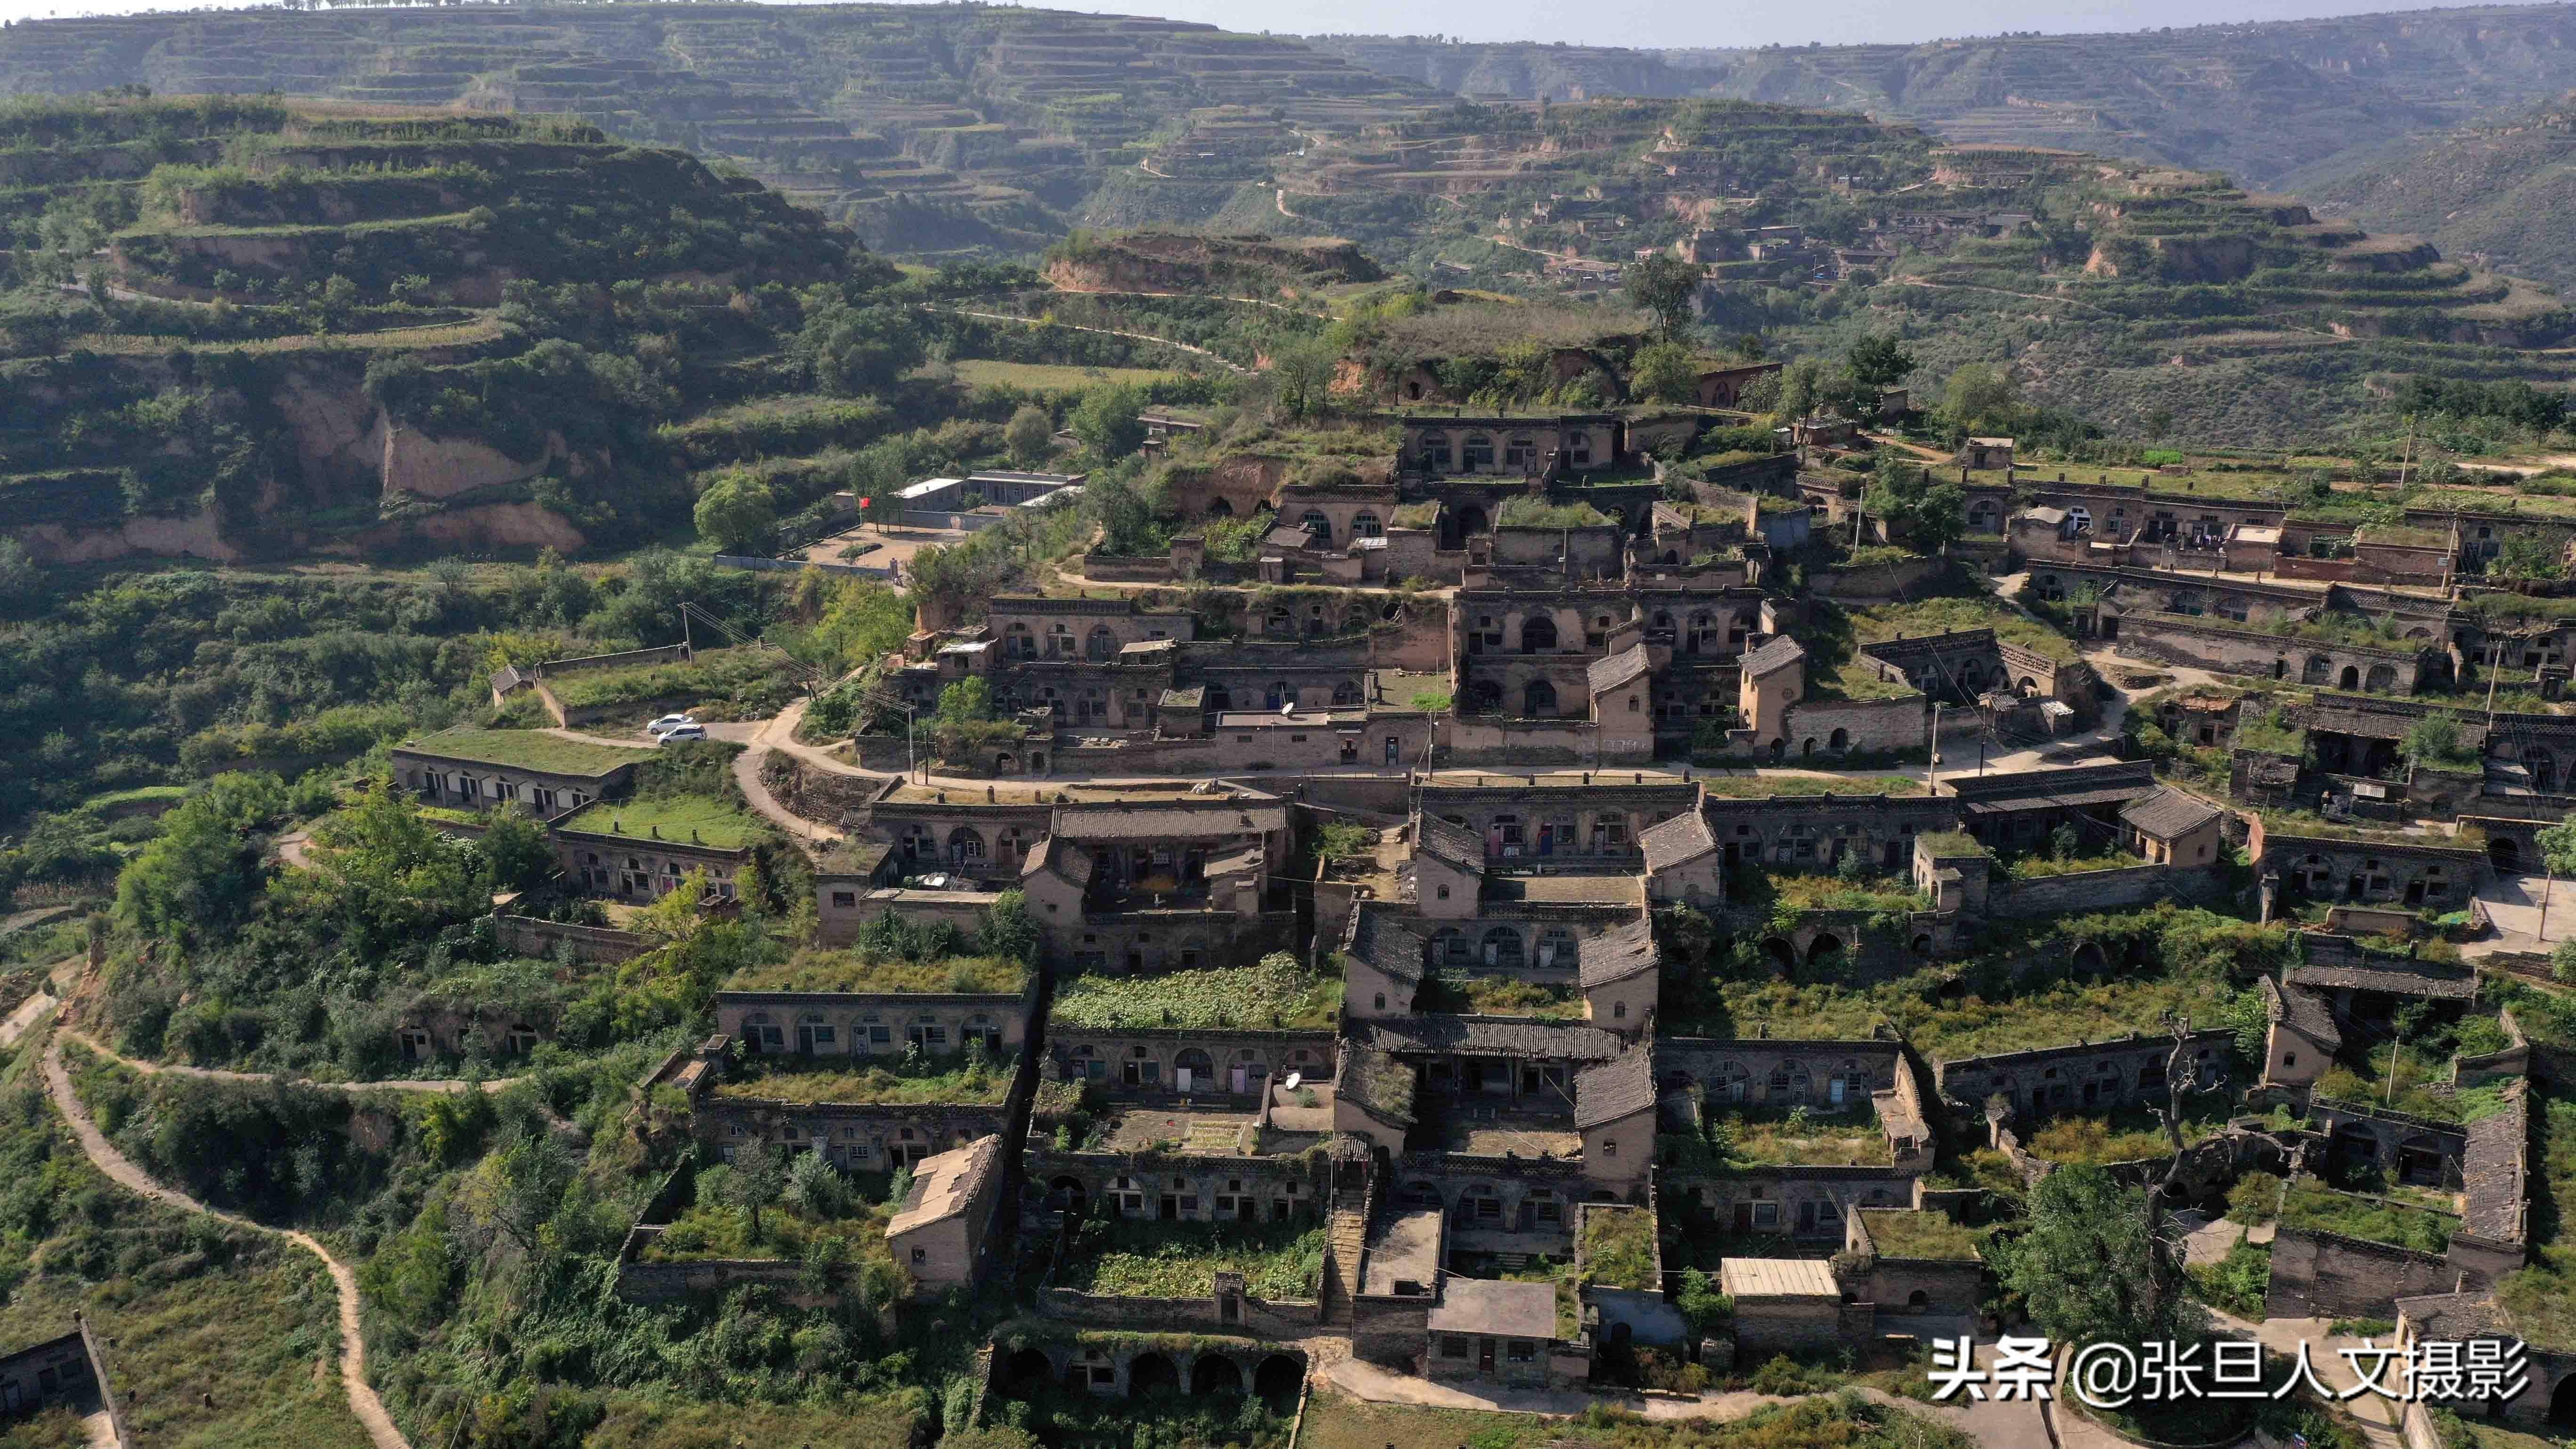 藏在深山的古村落 依山而建的建筑群堪称中国一绝 无人的村庄真荒凉